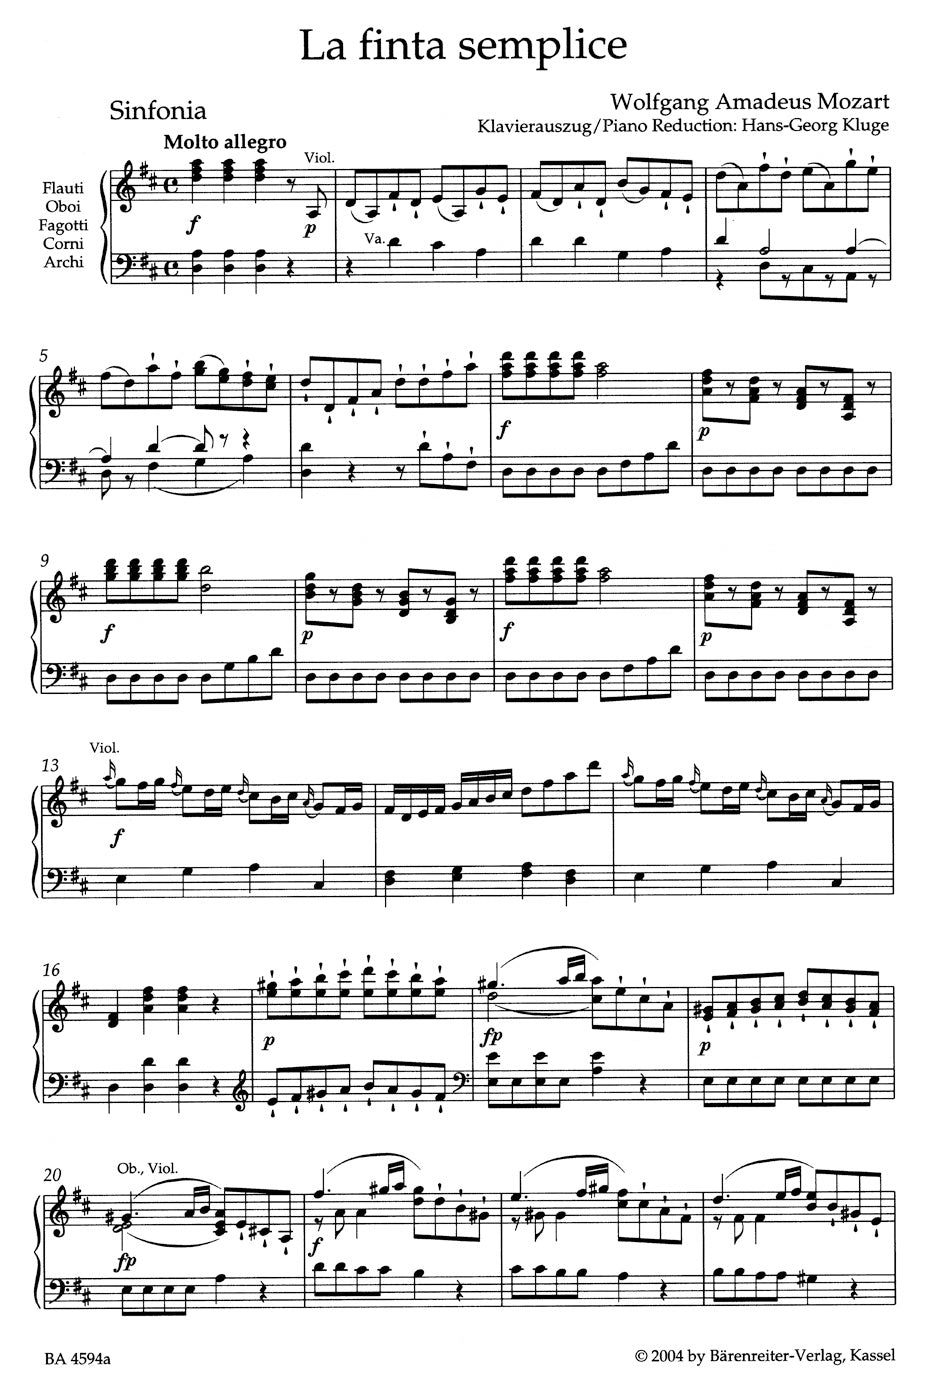 Mozart La finta semplice KV 51 (46a) -Opera buffa in 3 Akten- (Die schlaue Heuchlerin)